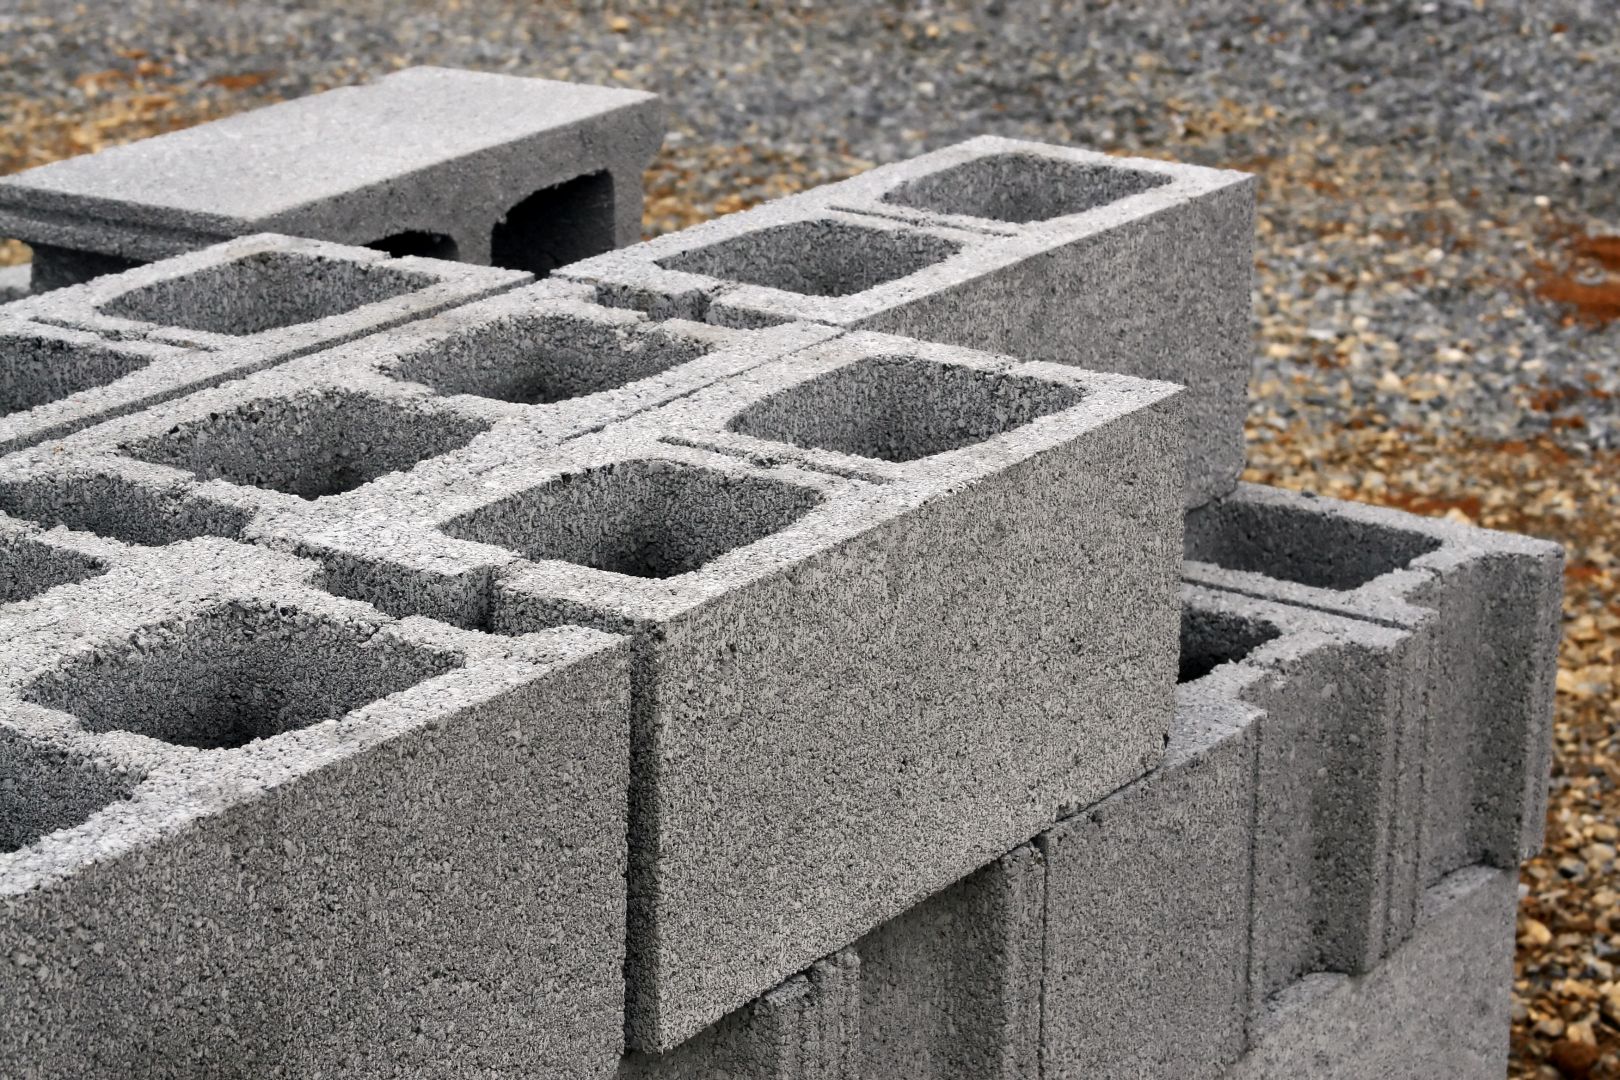 Zhotovení betonových konstrukcí pod terasu k jezírku, Královéhradecký kraj